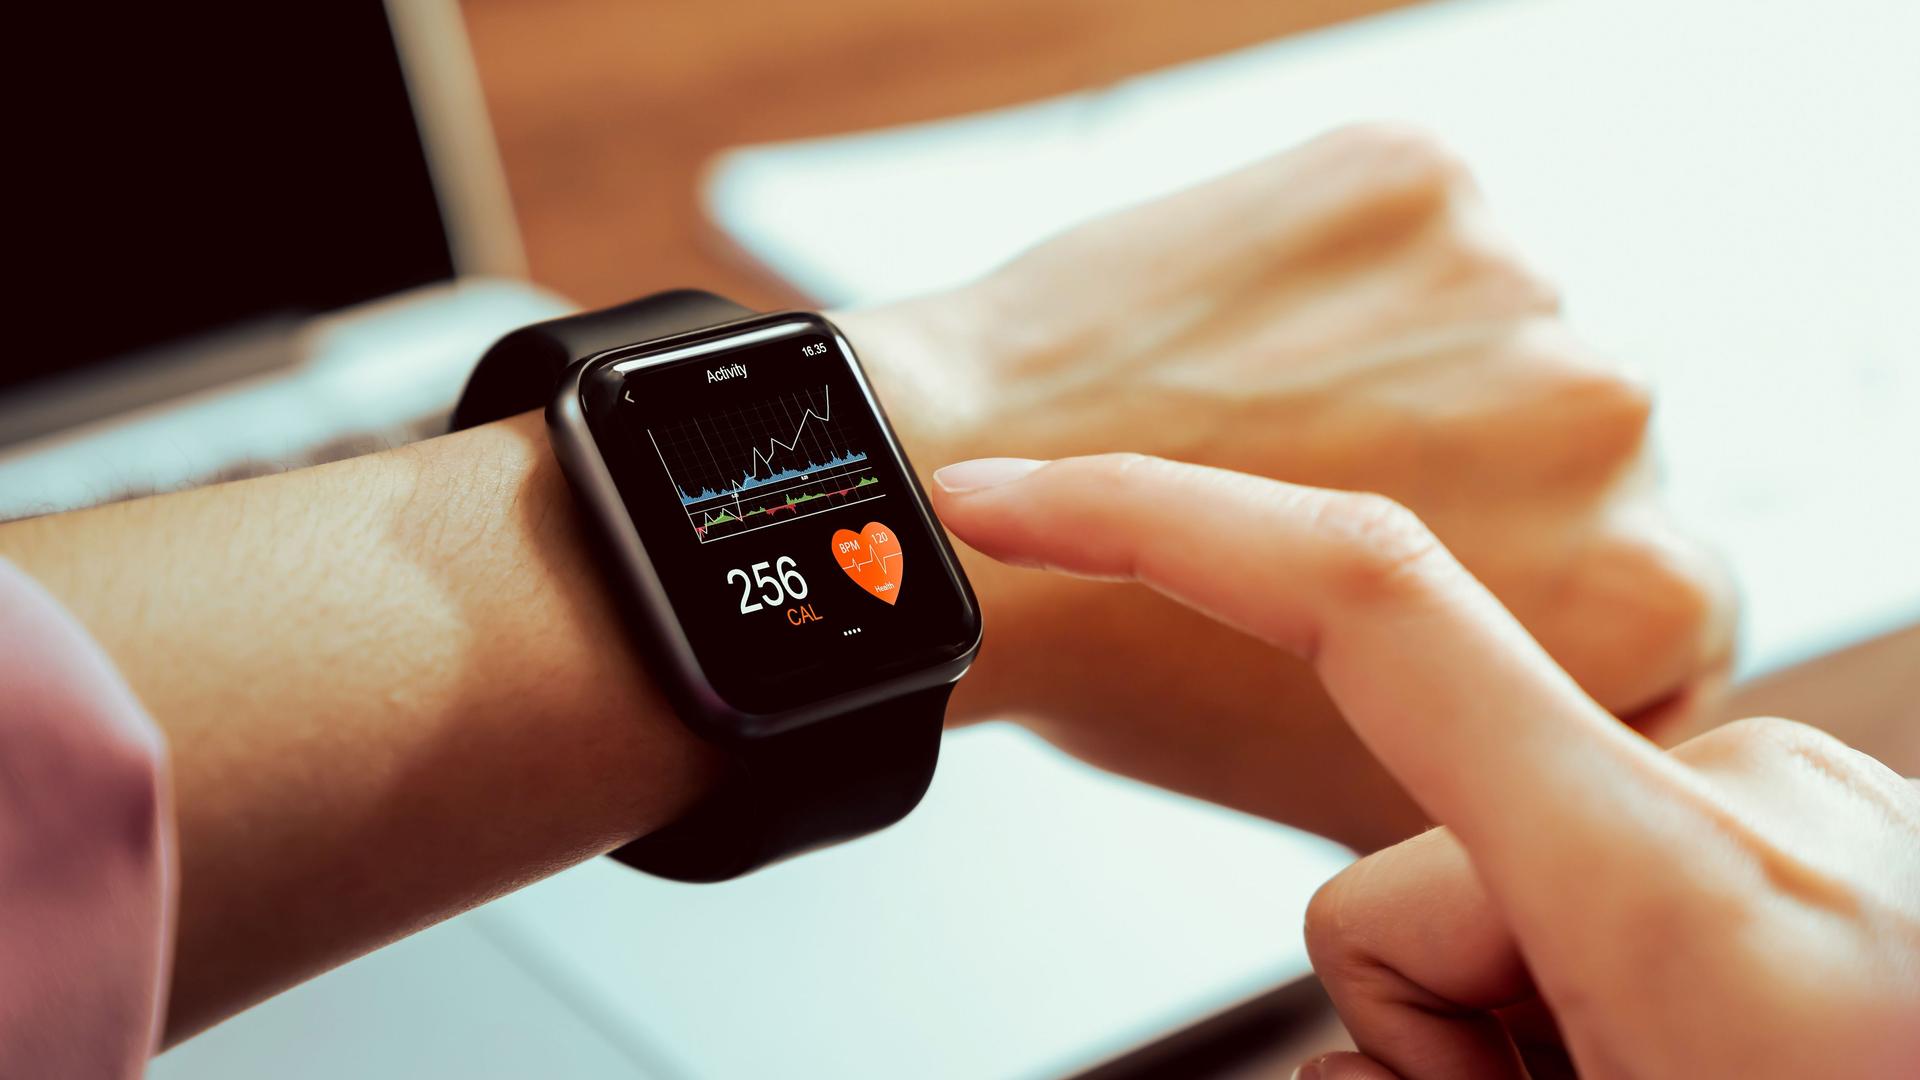 Nahaufnahme einer Hand mit Smartwatch und Gesundheits-App auf dem Bildschirm.